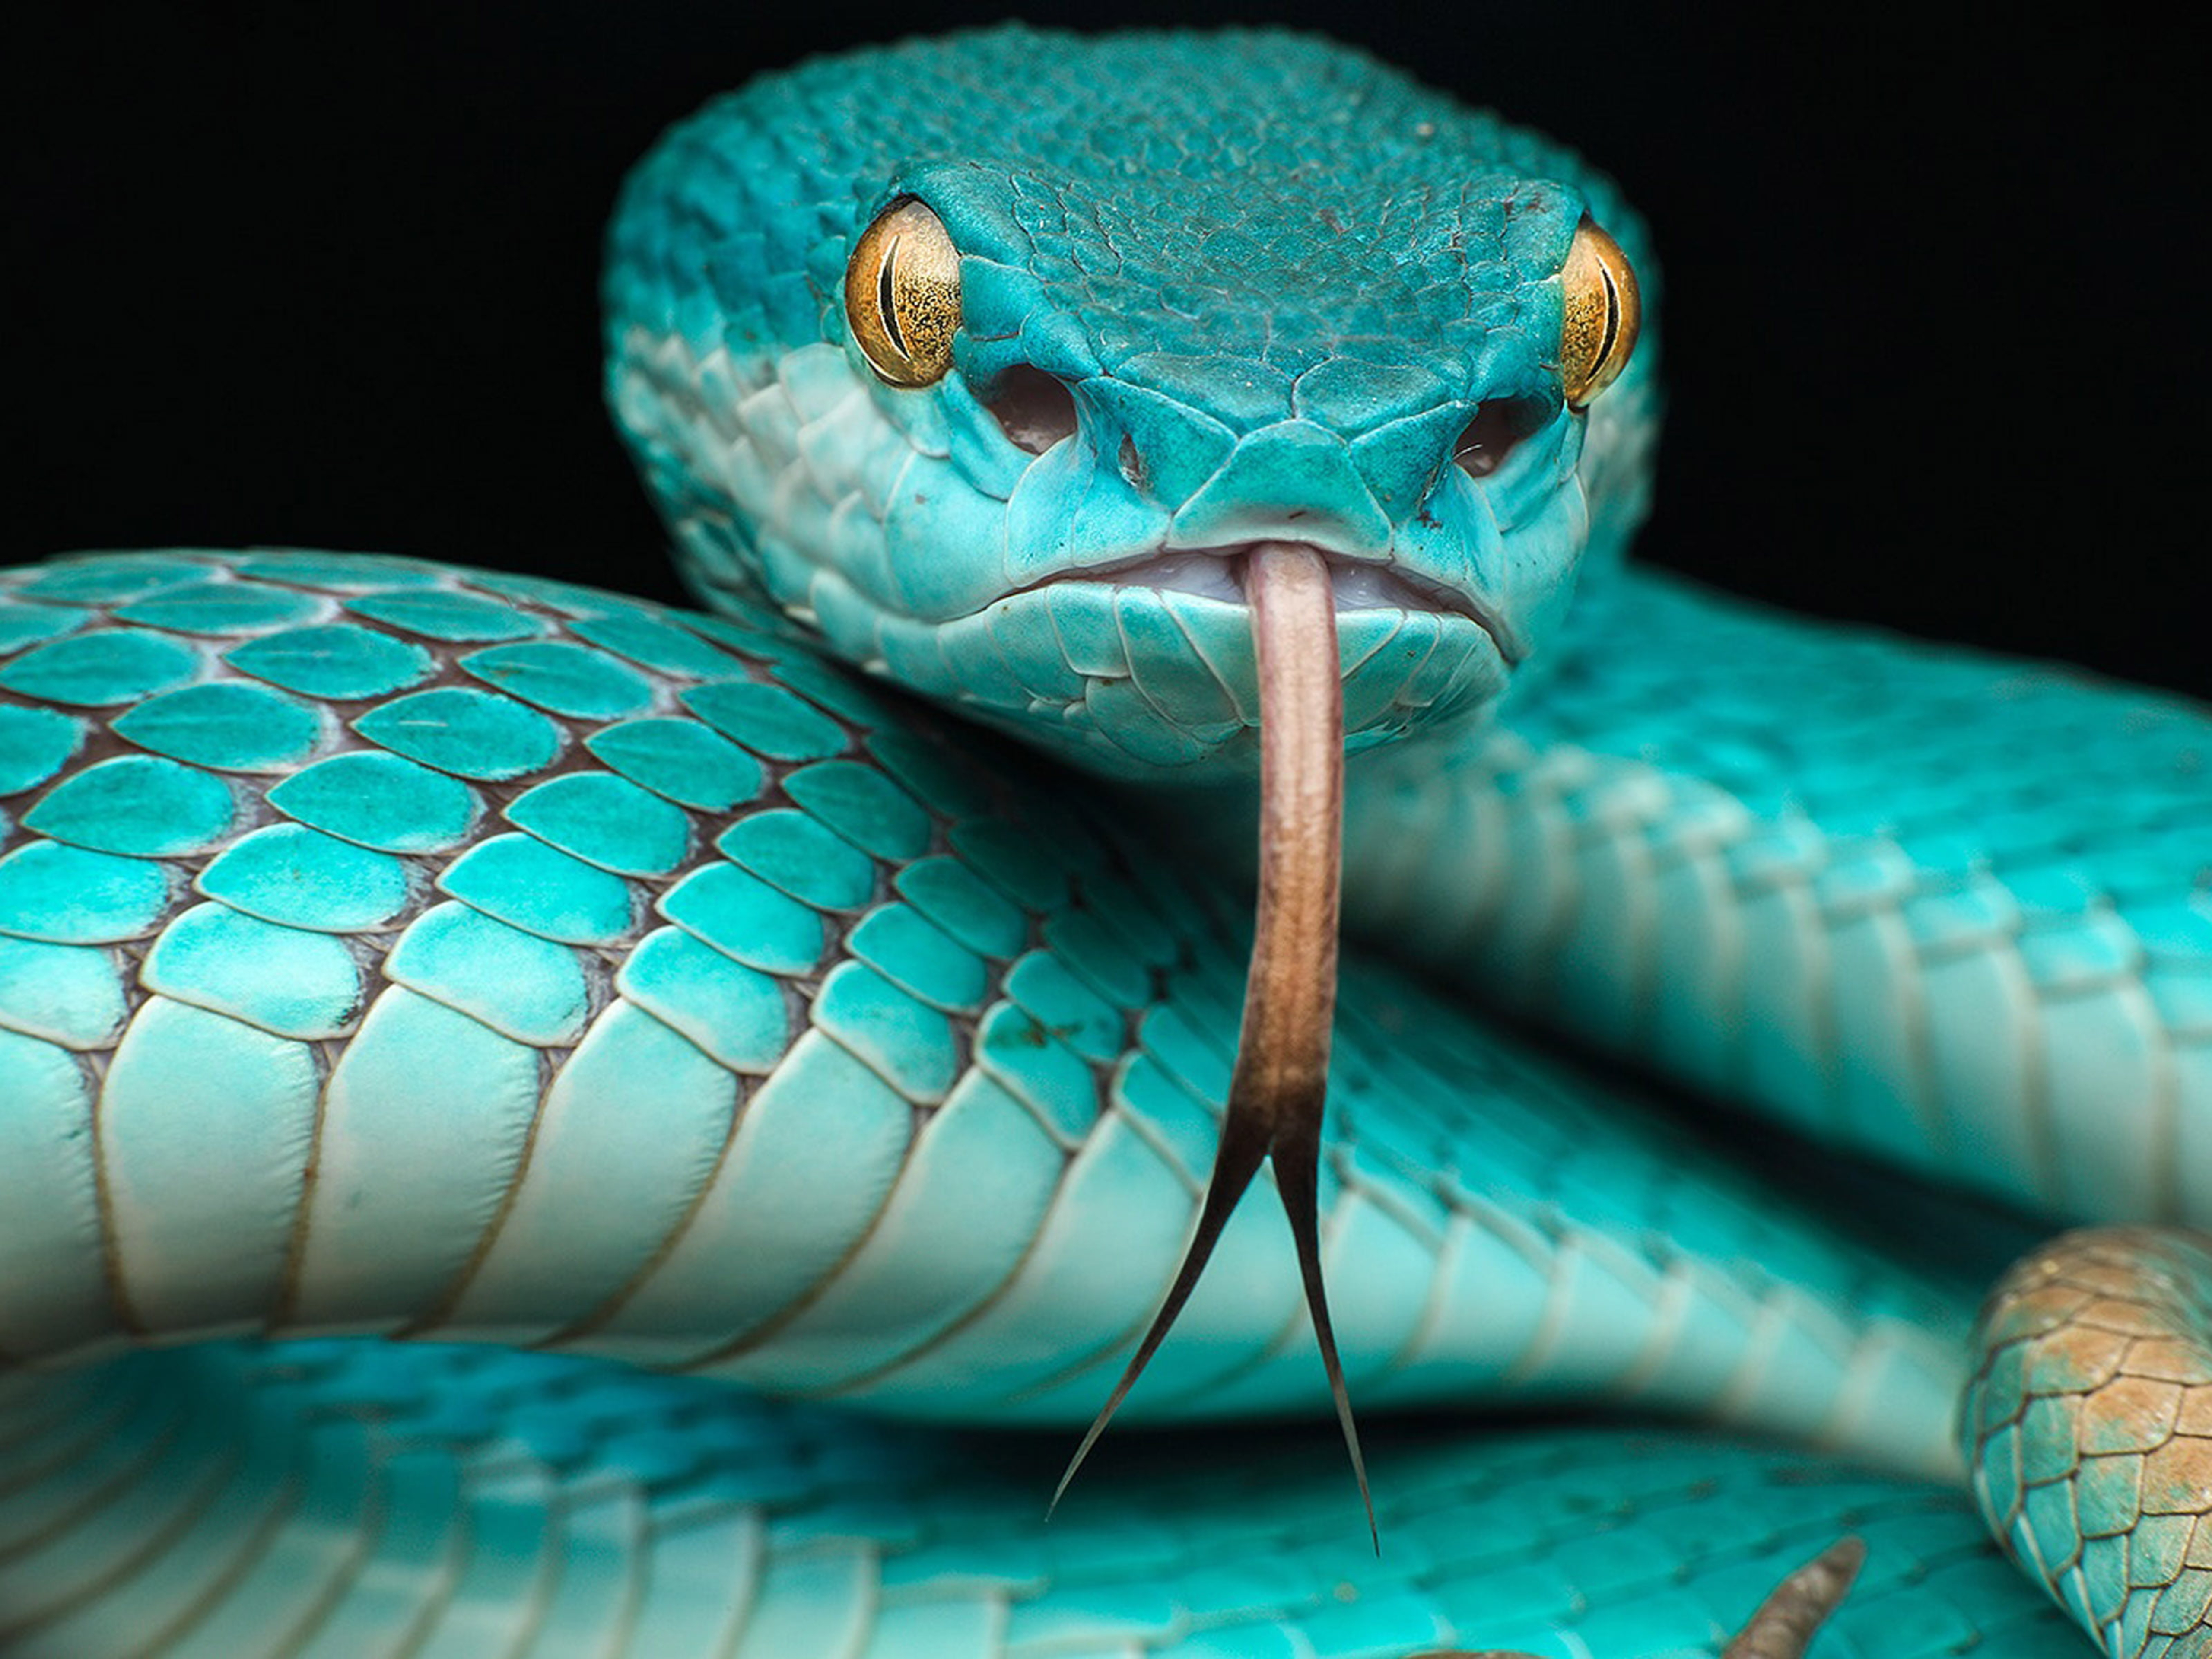 Japanese Blue Poison Snake.